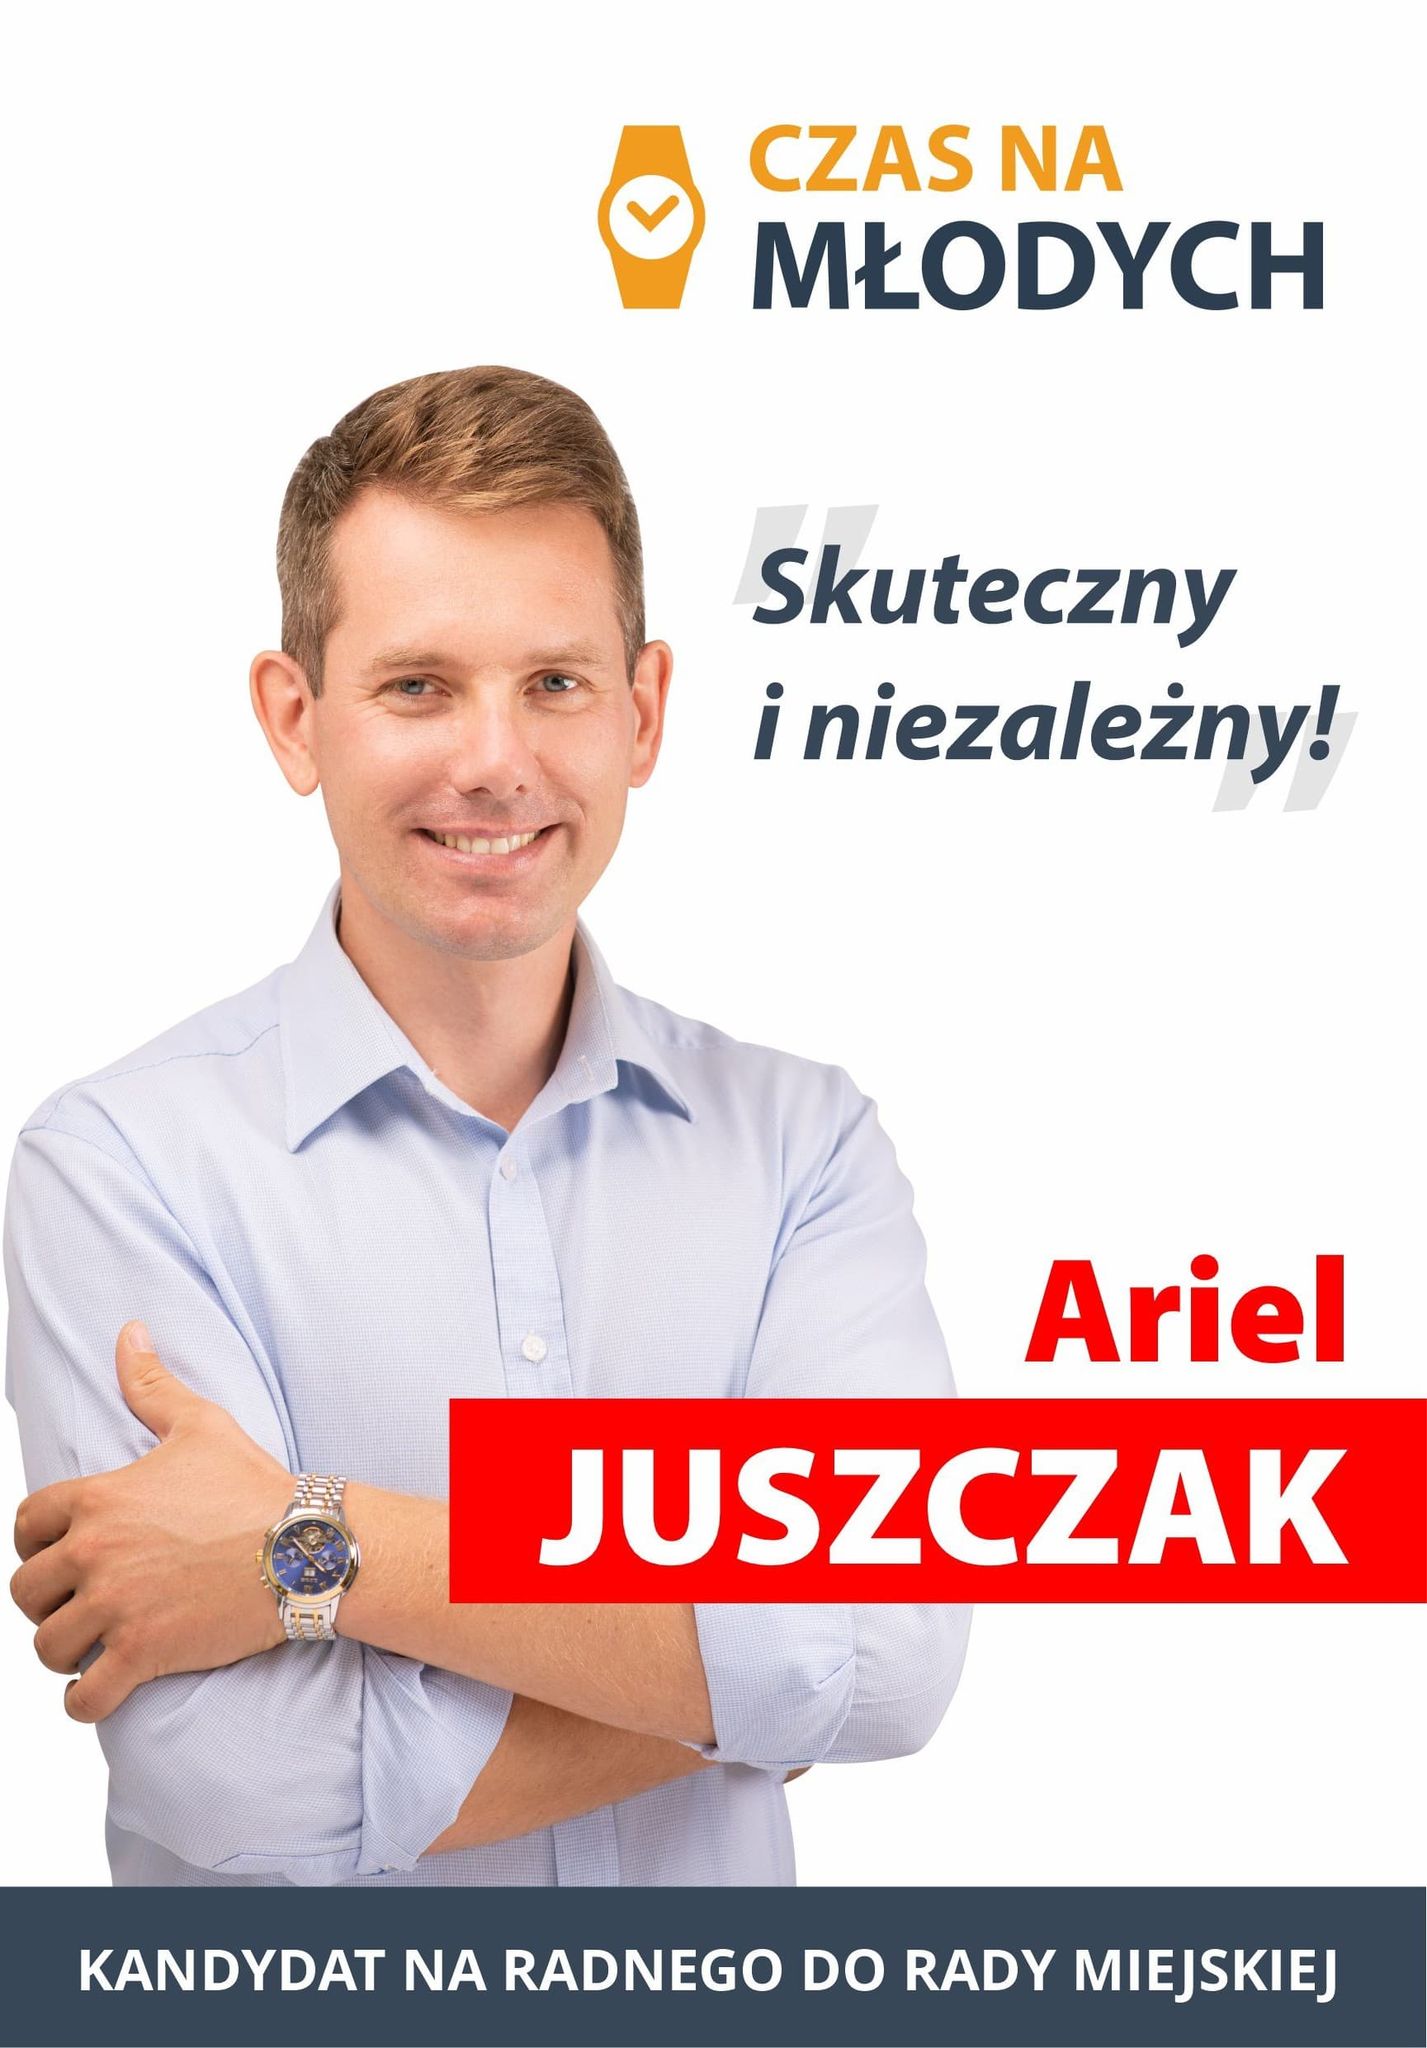 Kamień Pomorski potrzebuje niezależnych radnych! Głosuj na Ariela Juszczaka!